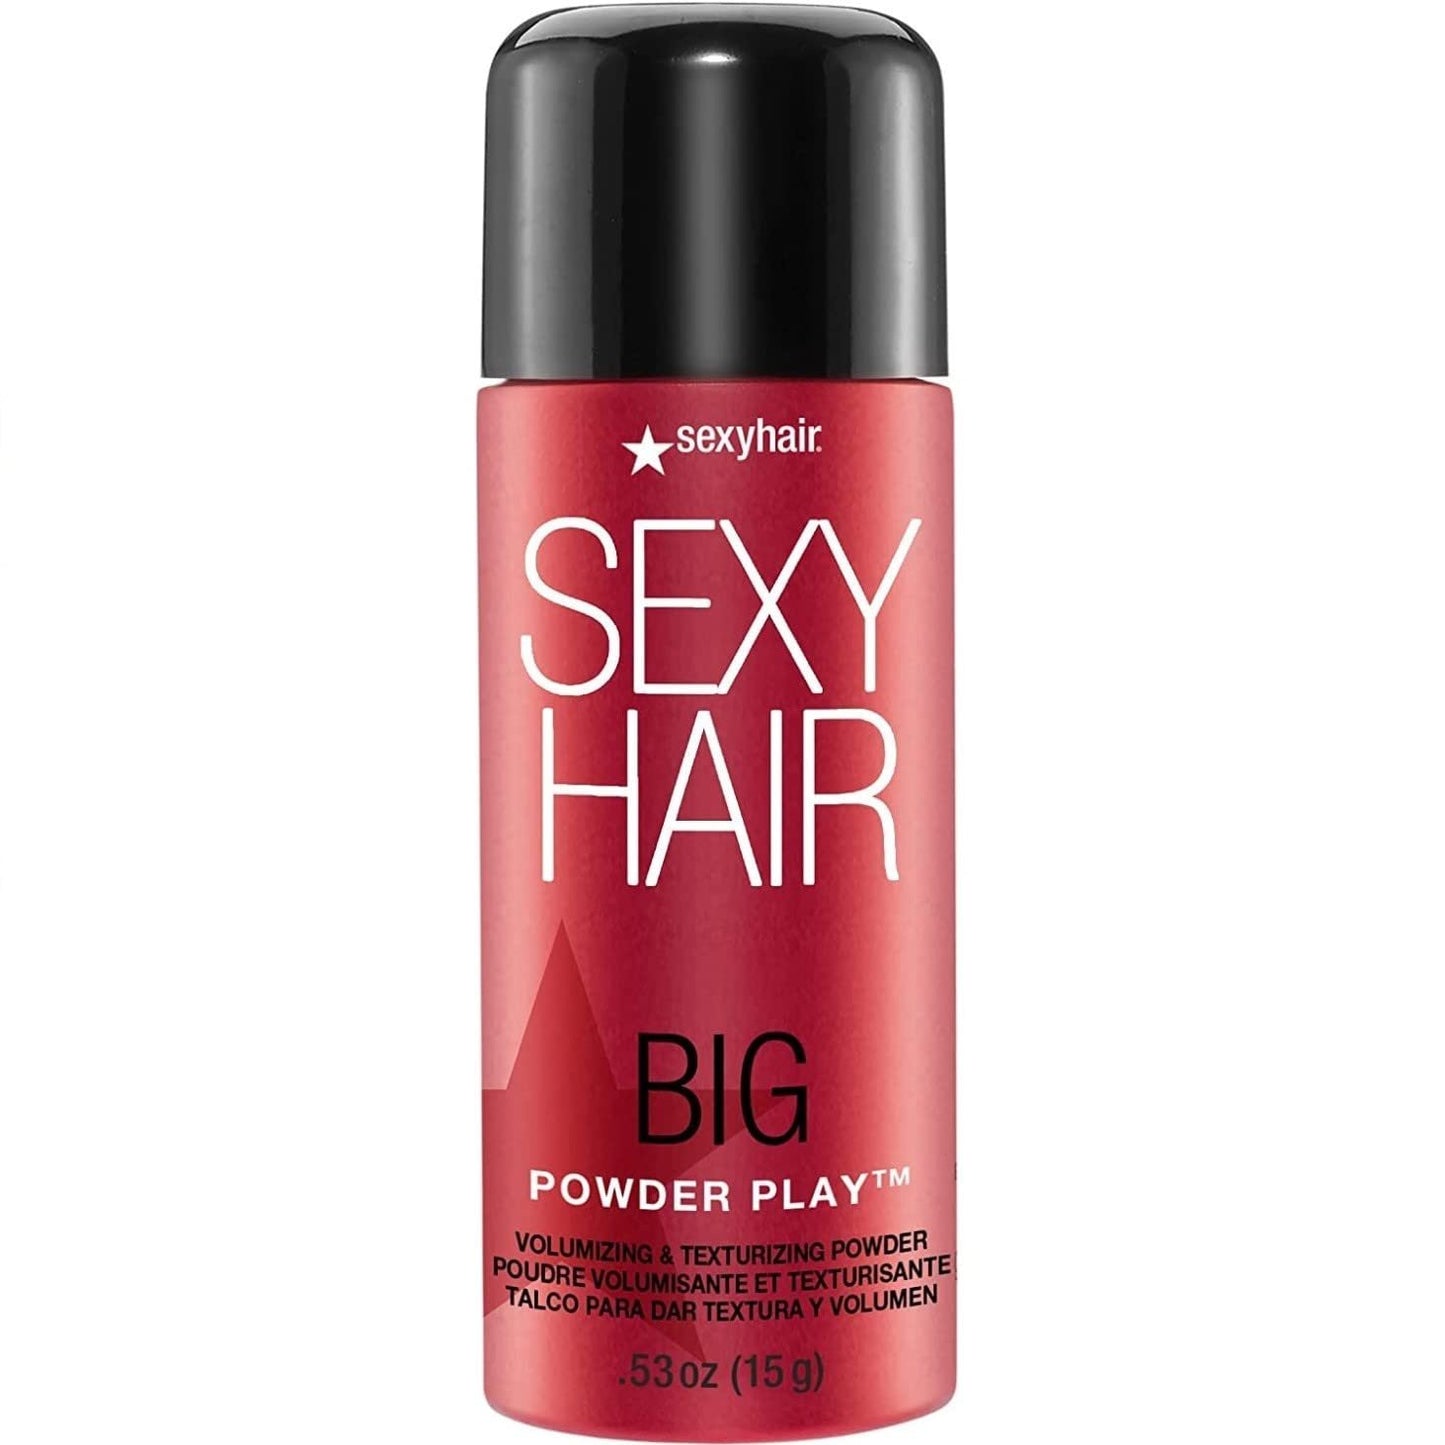 Sexy Hair Big Powder Play Volumizing & Texturizing Powder 15 g / 0.53 oz